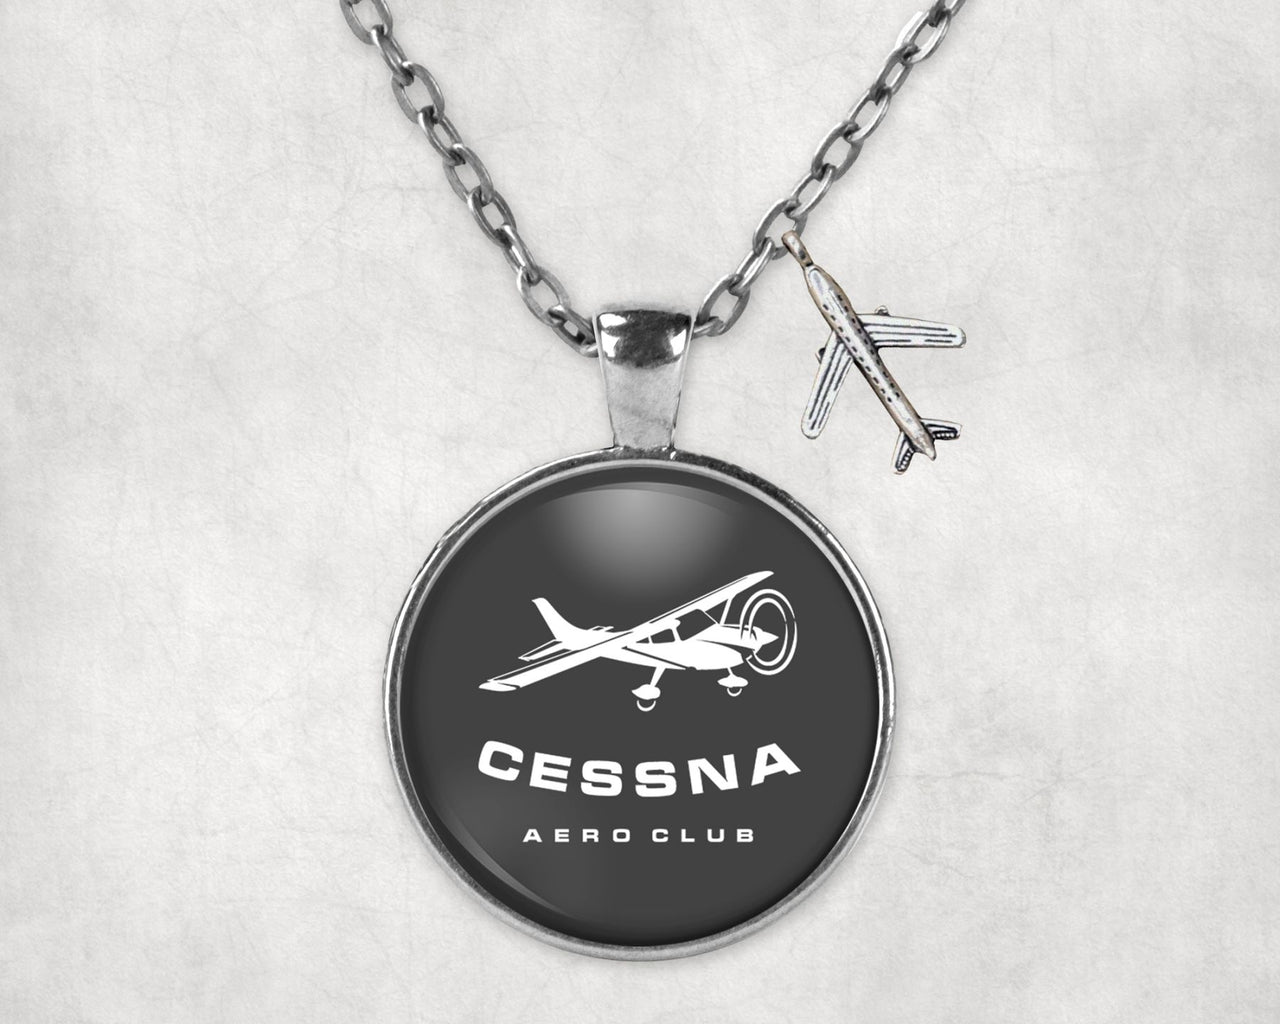 Cessna Aeroclub Designed Necklaces